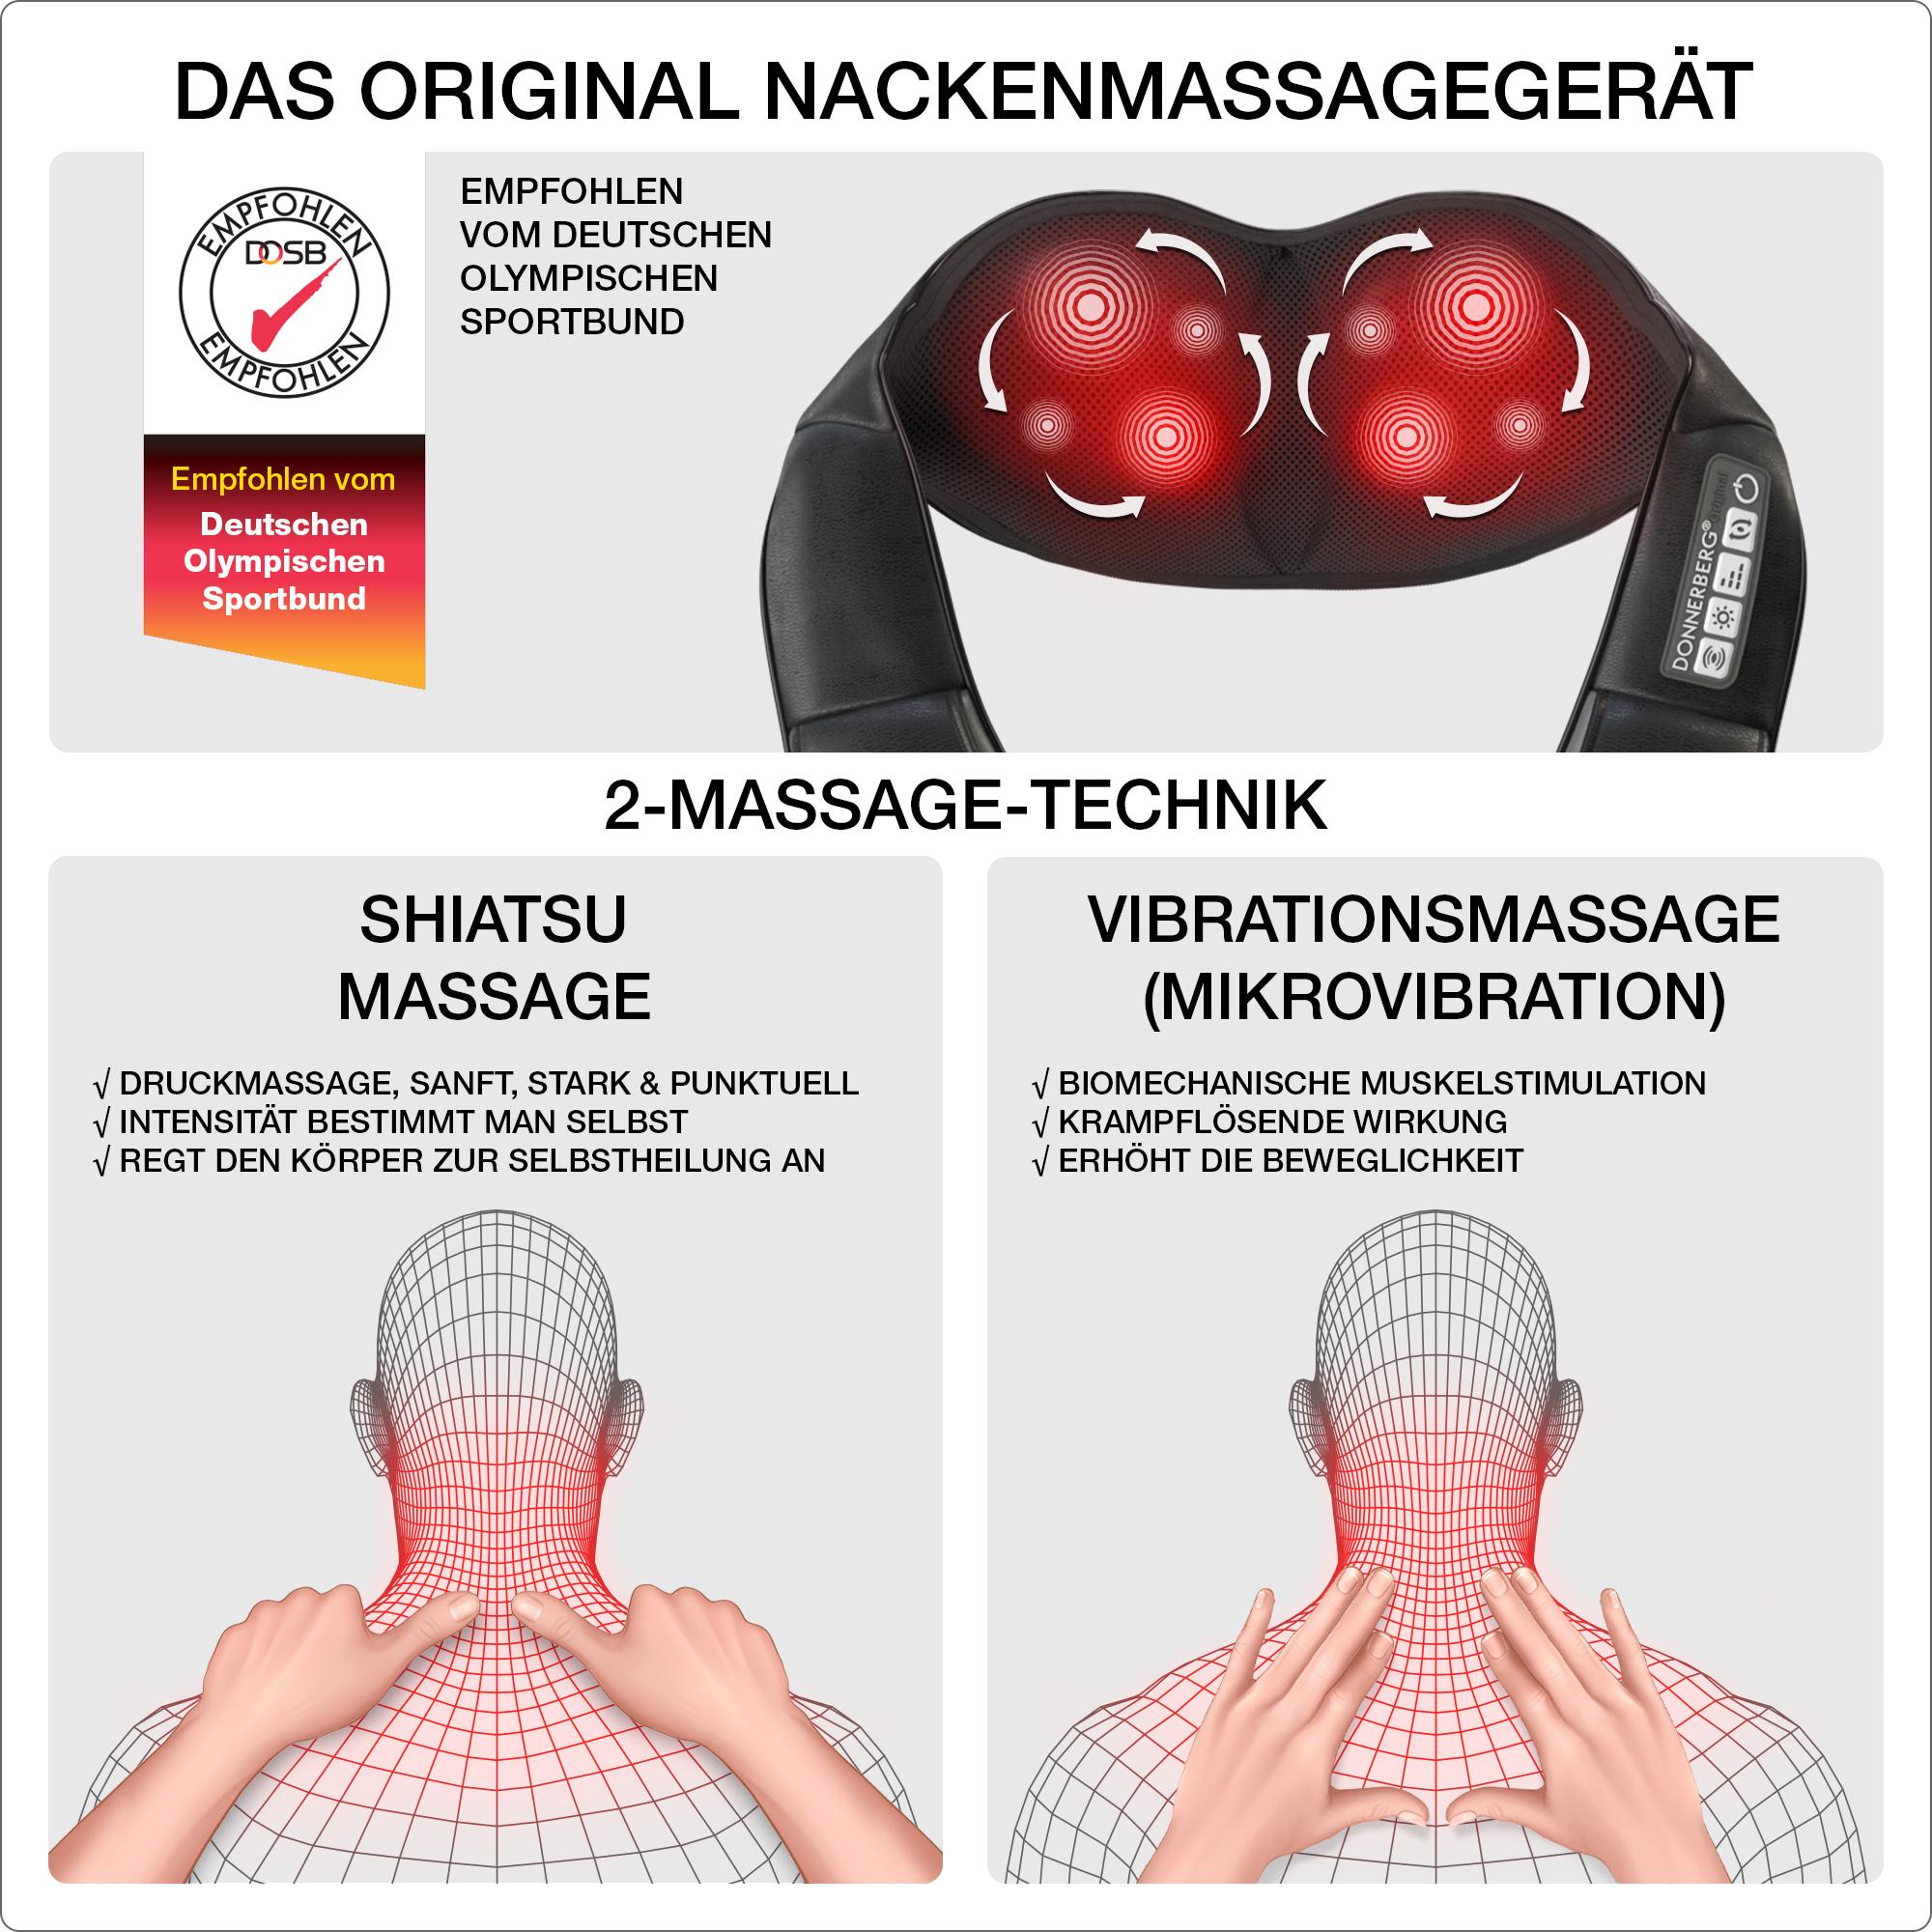 DONNERBERG 4D Massagegerät Shiatsu Nackenmassagegerät DAS Massage ORIGINAL